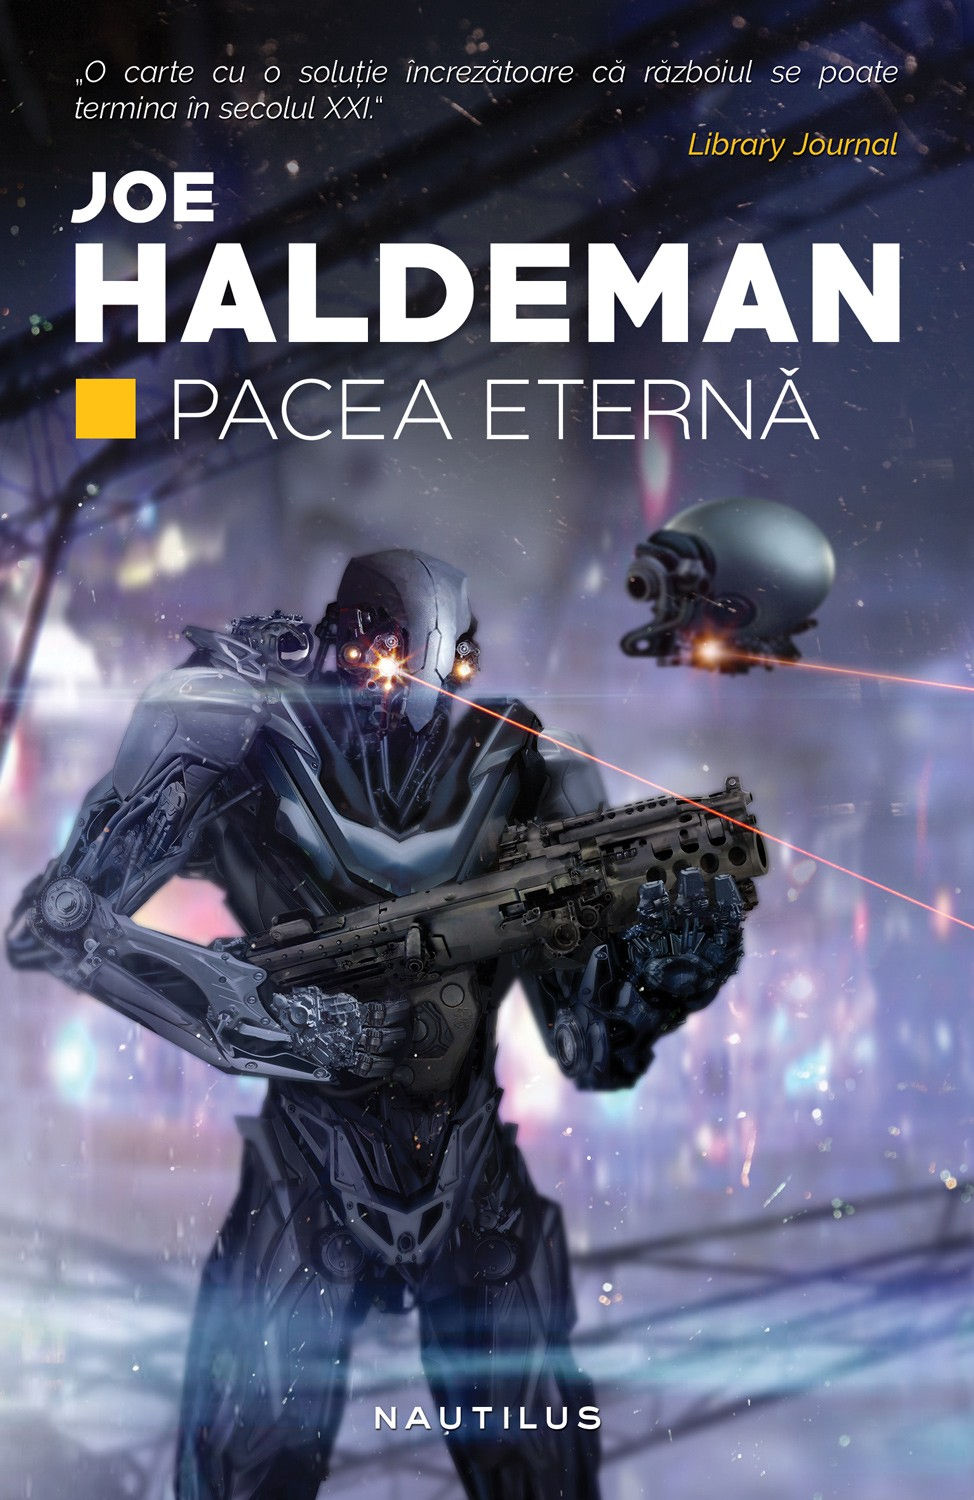 eBook Pacea eterna - Joe Haldeman